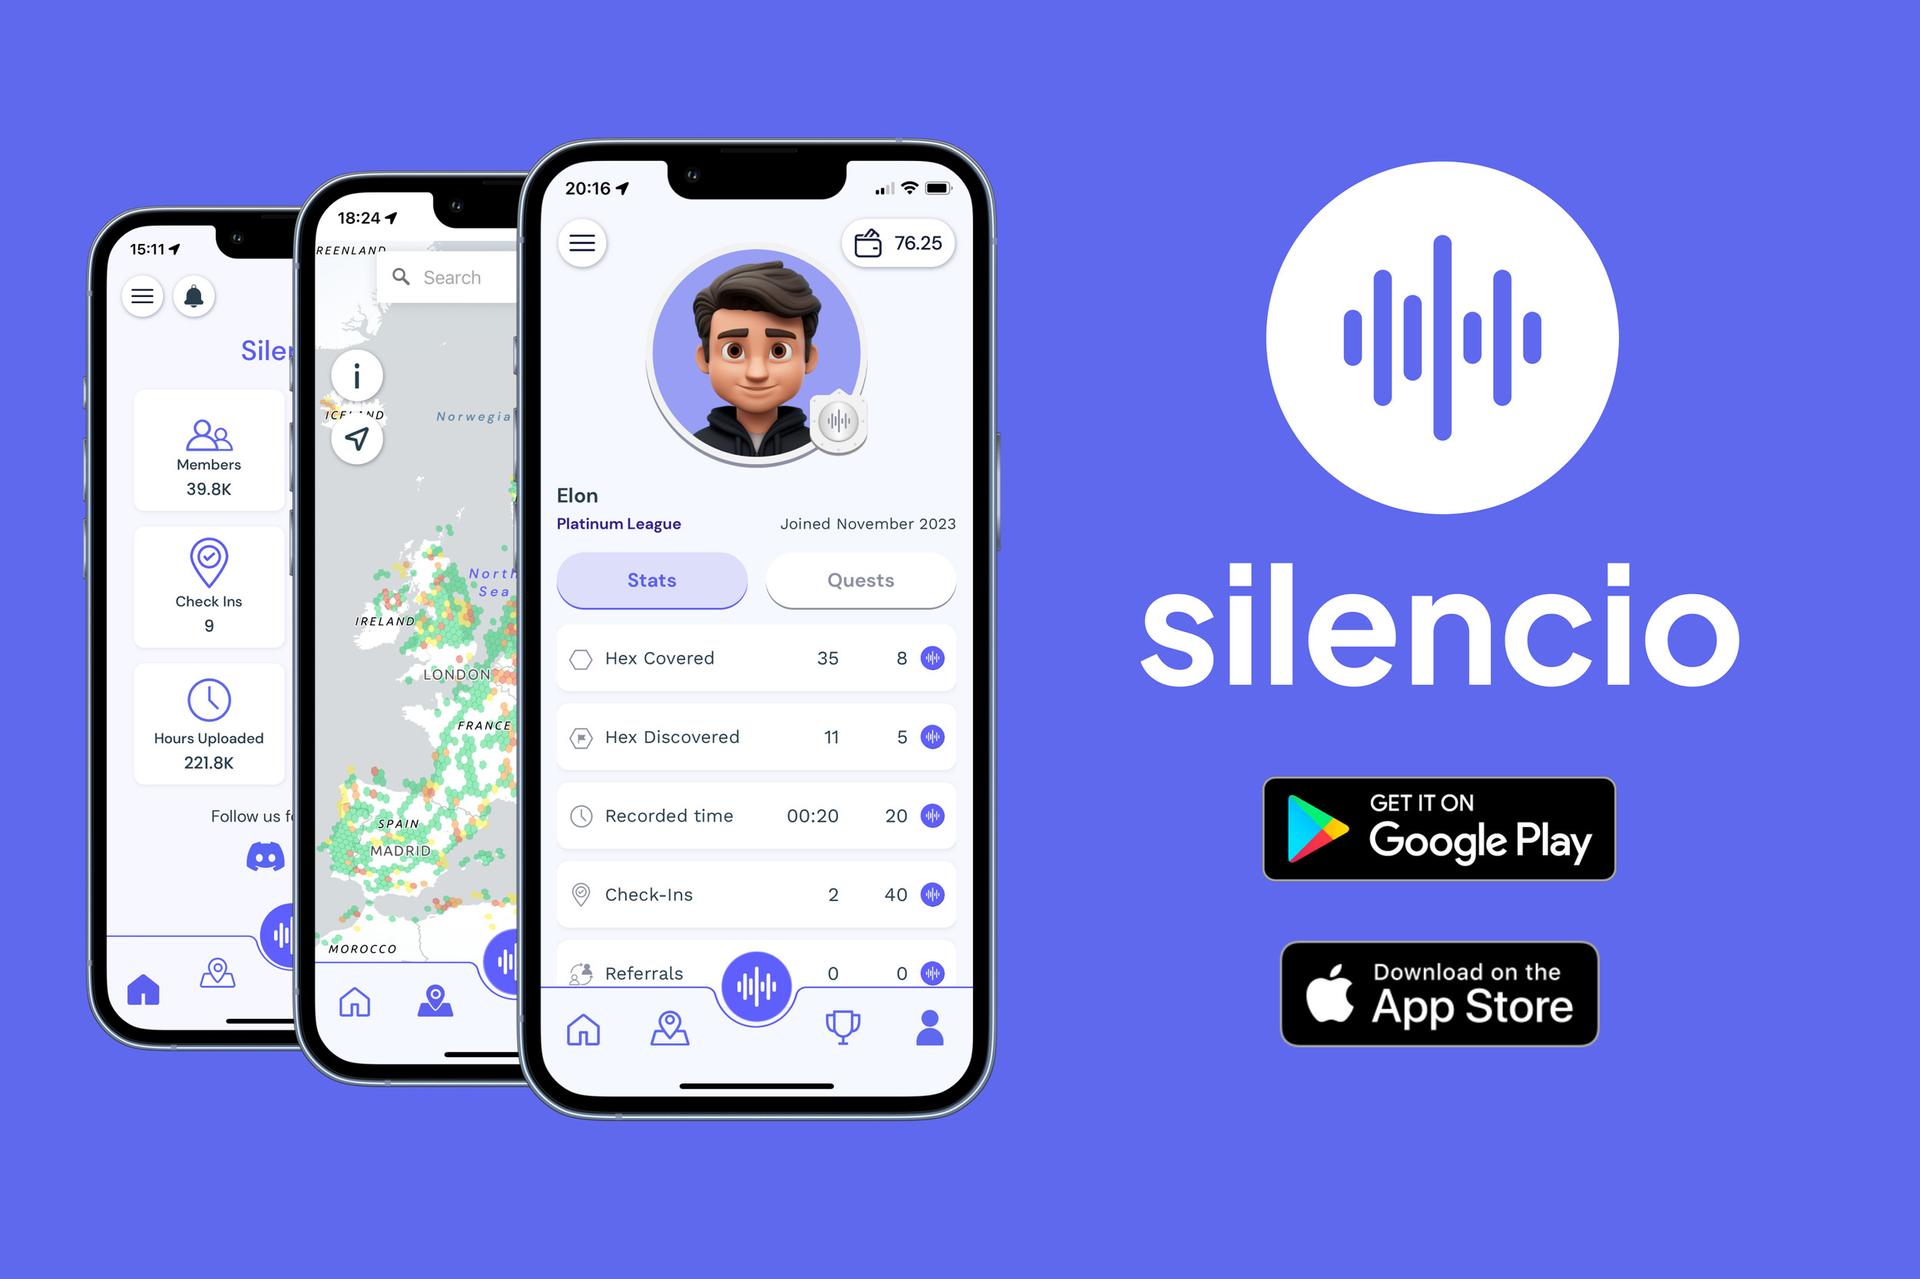 Silencio Newsletter Update